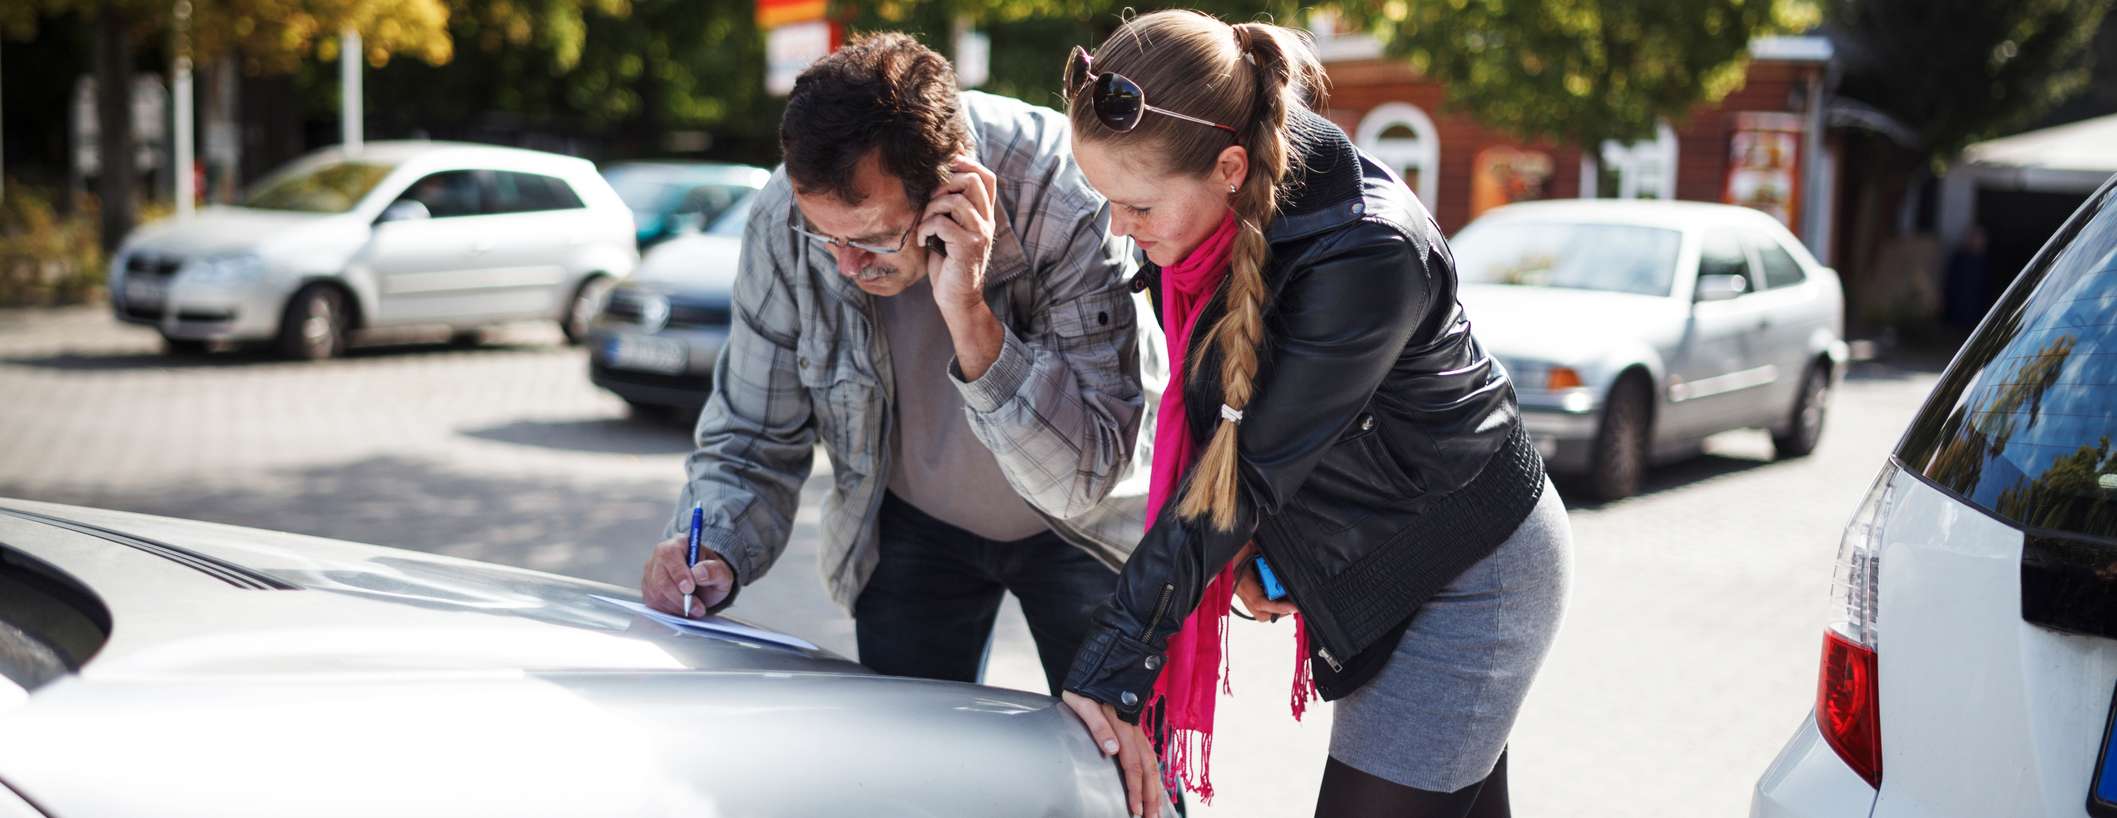 Allianz - Europäischer Unfallbericht: Frau füllt gemeinsam mit Mann, der telefoniert, an Unfallstelle ein Formular aus